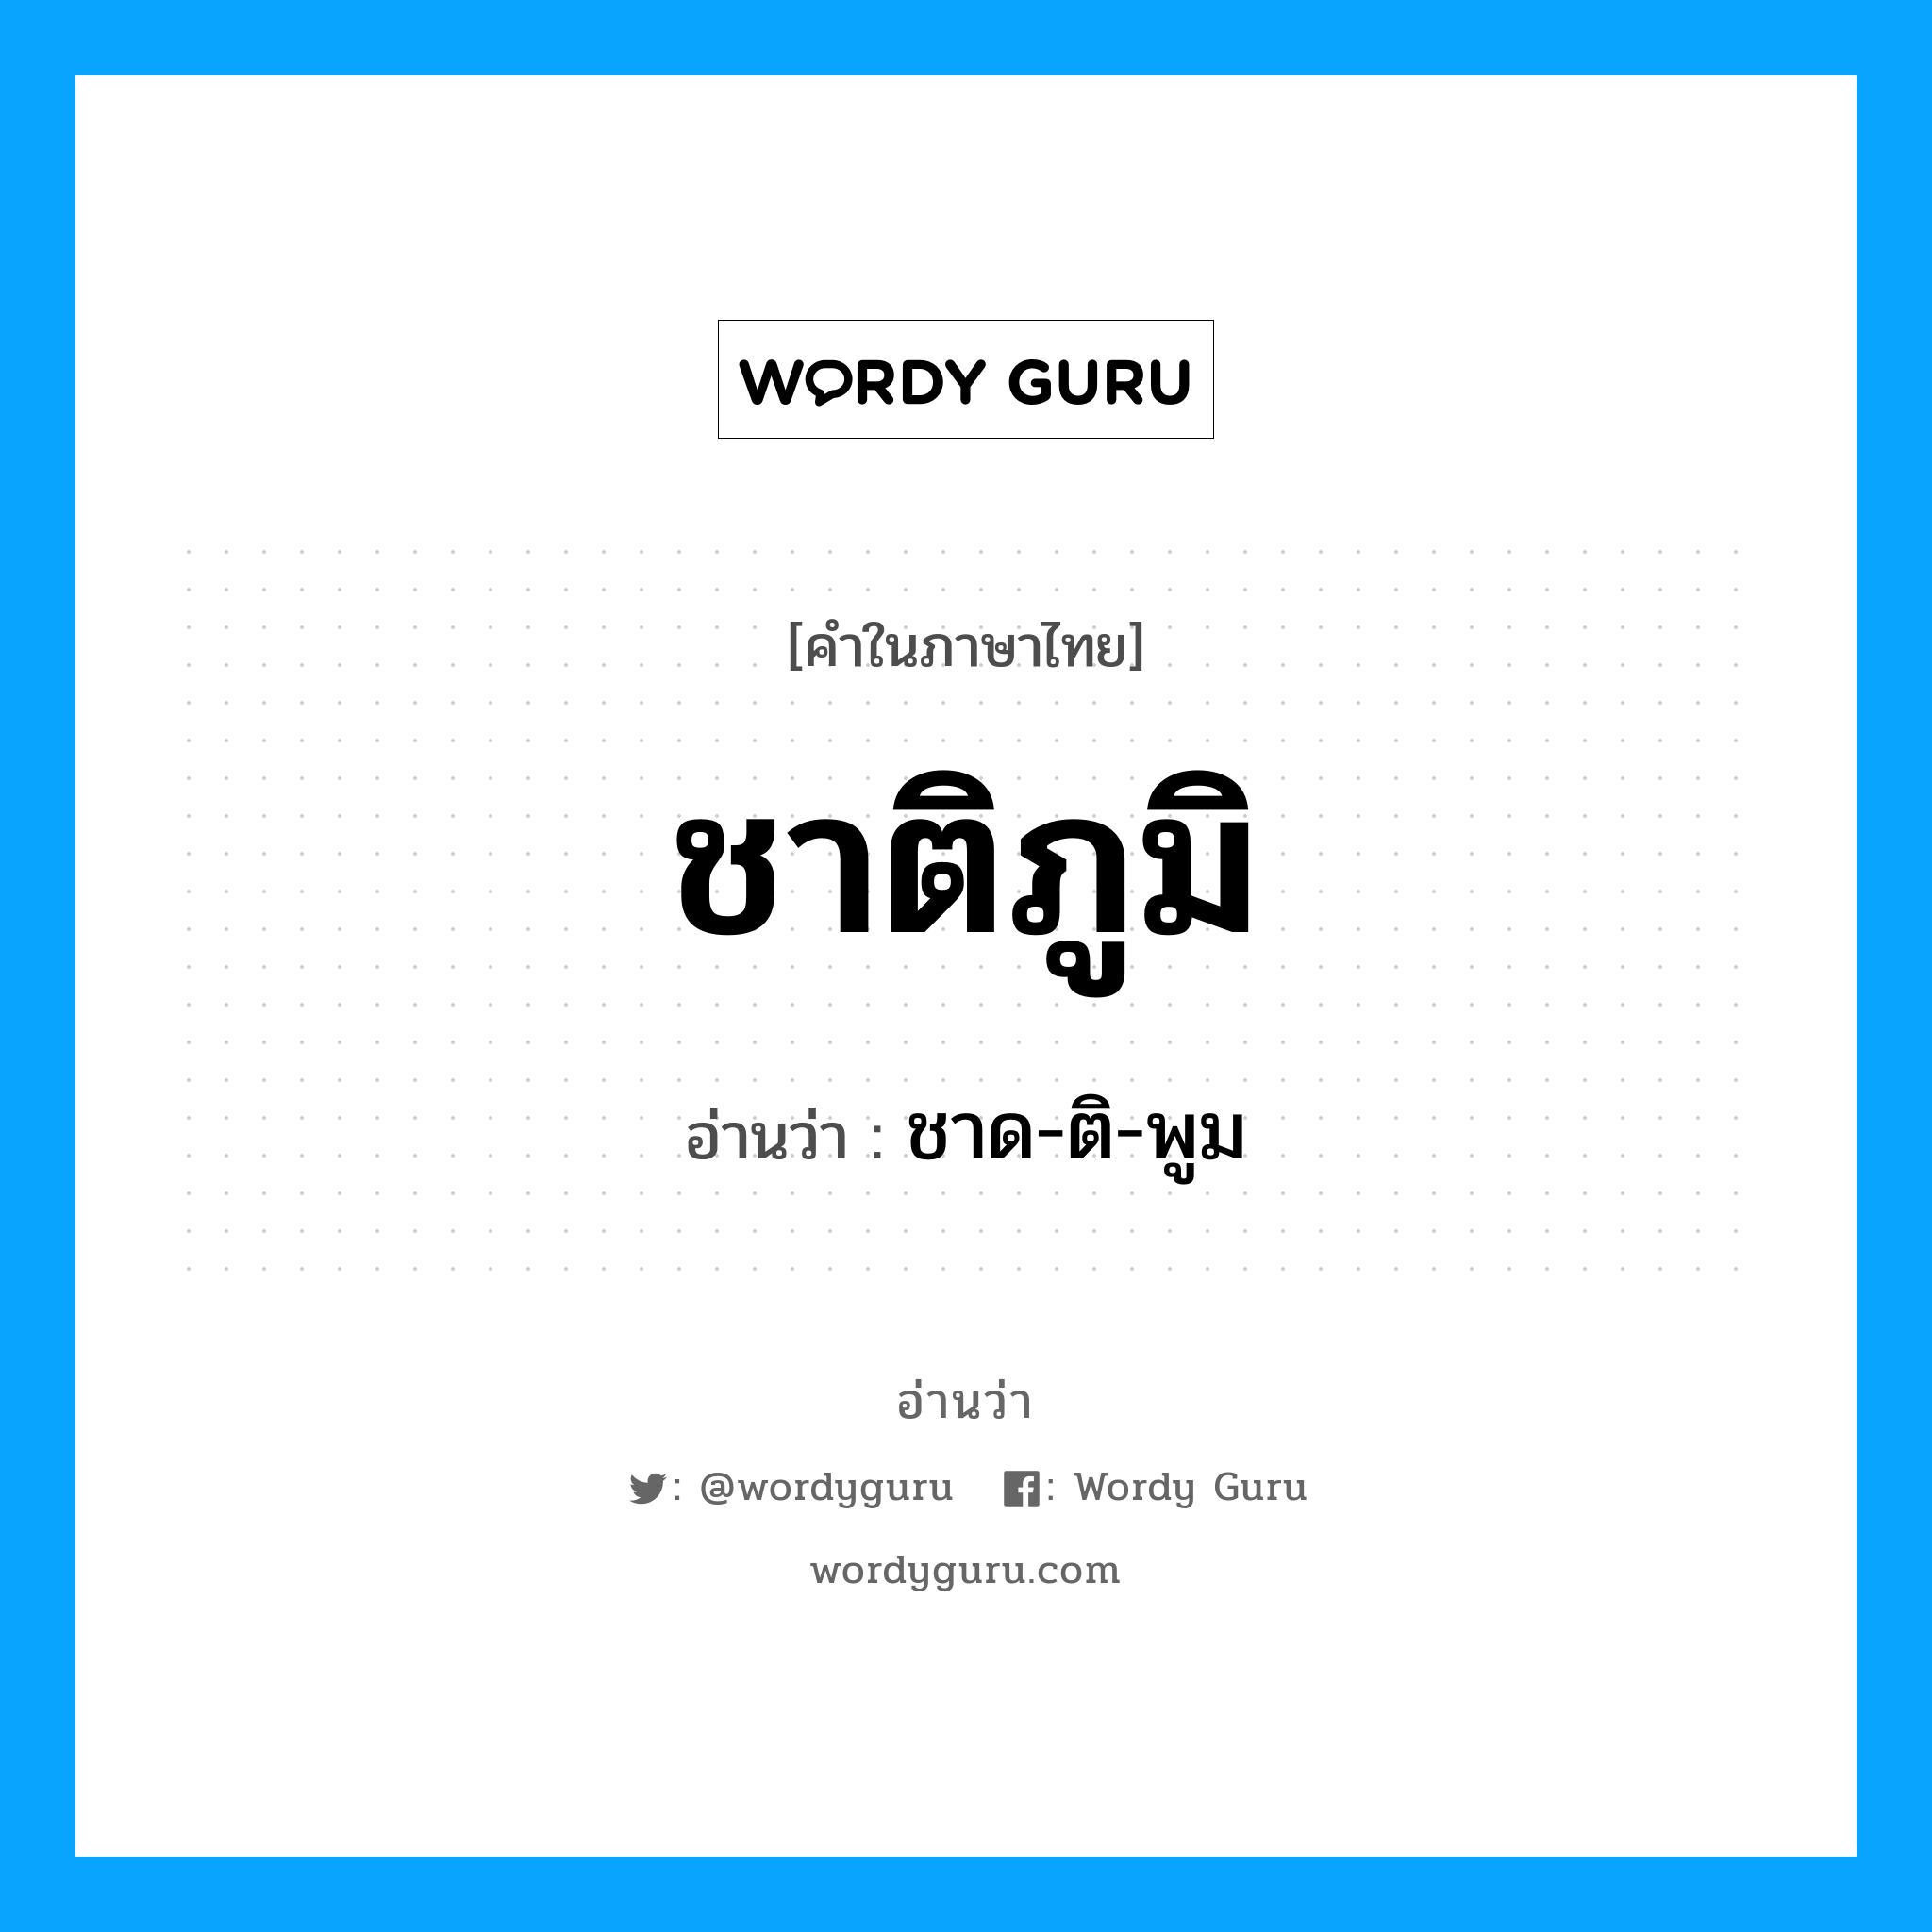 ชาด-ติ-พูม เป็นคำอ่านของคำไหน?, คำในภาษาไทย ชาด-ติ-พูม อ่านว่า ชาติภูมิ